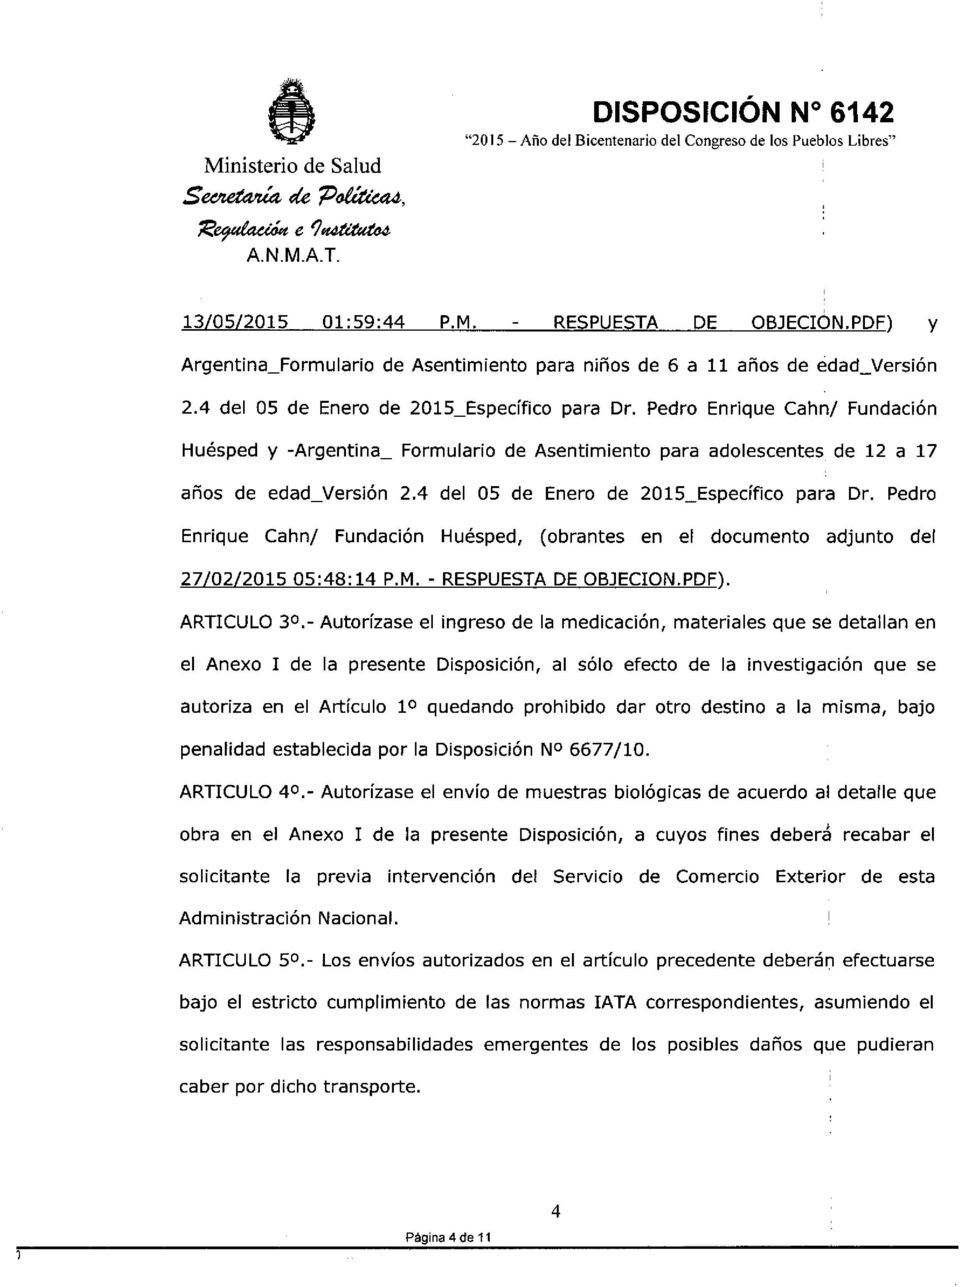 4 del 05 de Enero de 2015_Específico para Dr. Pedro Enrique Cahn/ Fundación Huésped, (obrantes en el documento adjunto del 27/02/201505:48:14 P.M. - RESPUESTADE OBJECrON.PDF). ARTICULO 30.